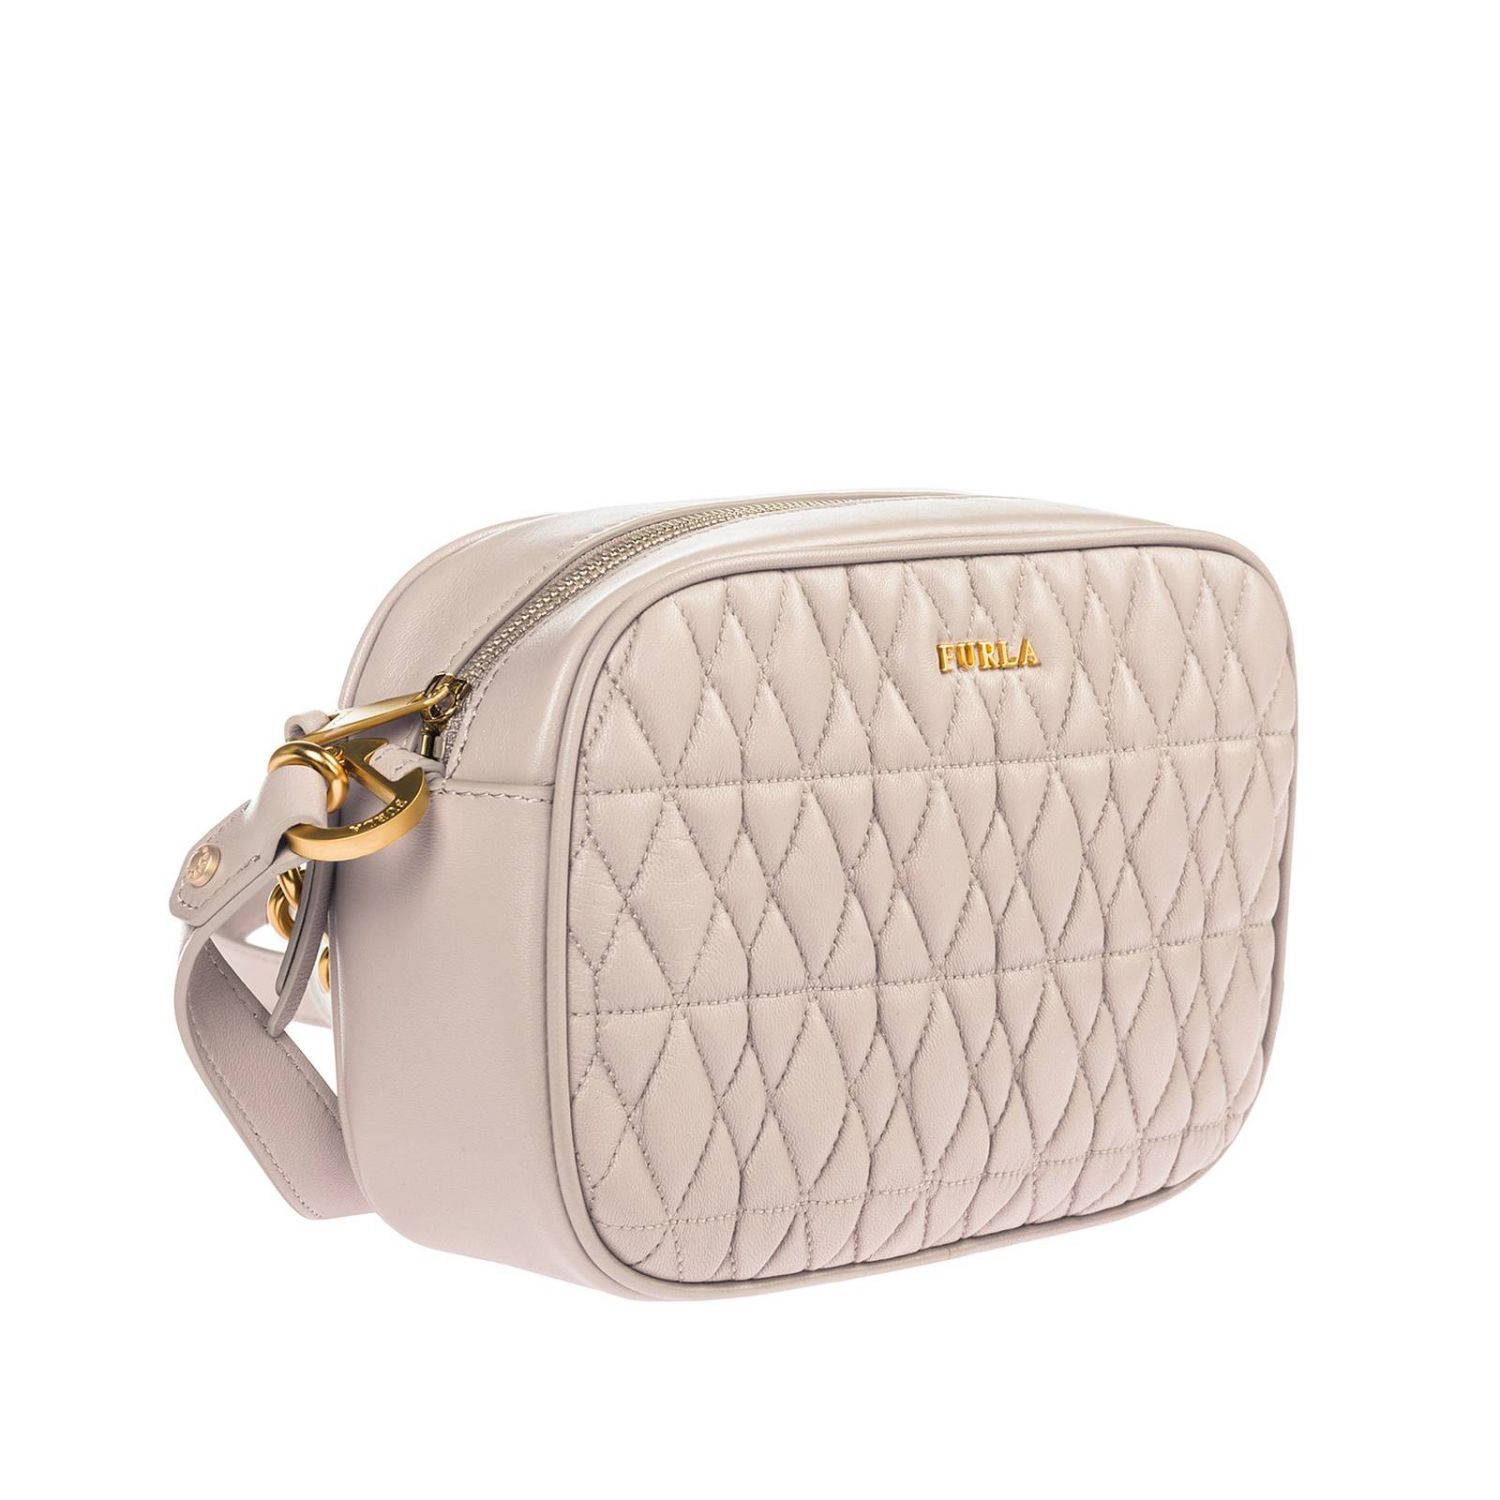 Furla Outlet: mini bag for woman - Dust | Furla mini bag 993104 online ...